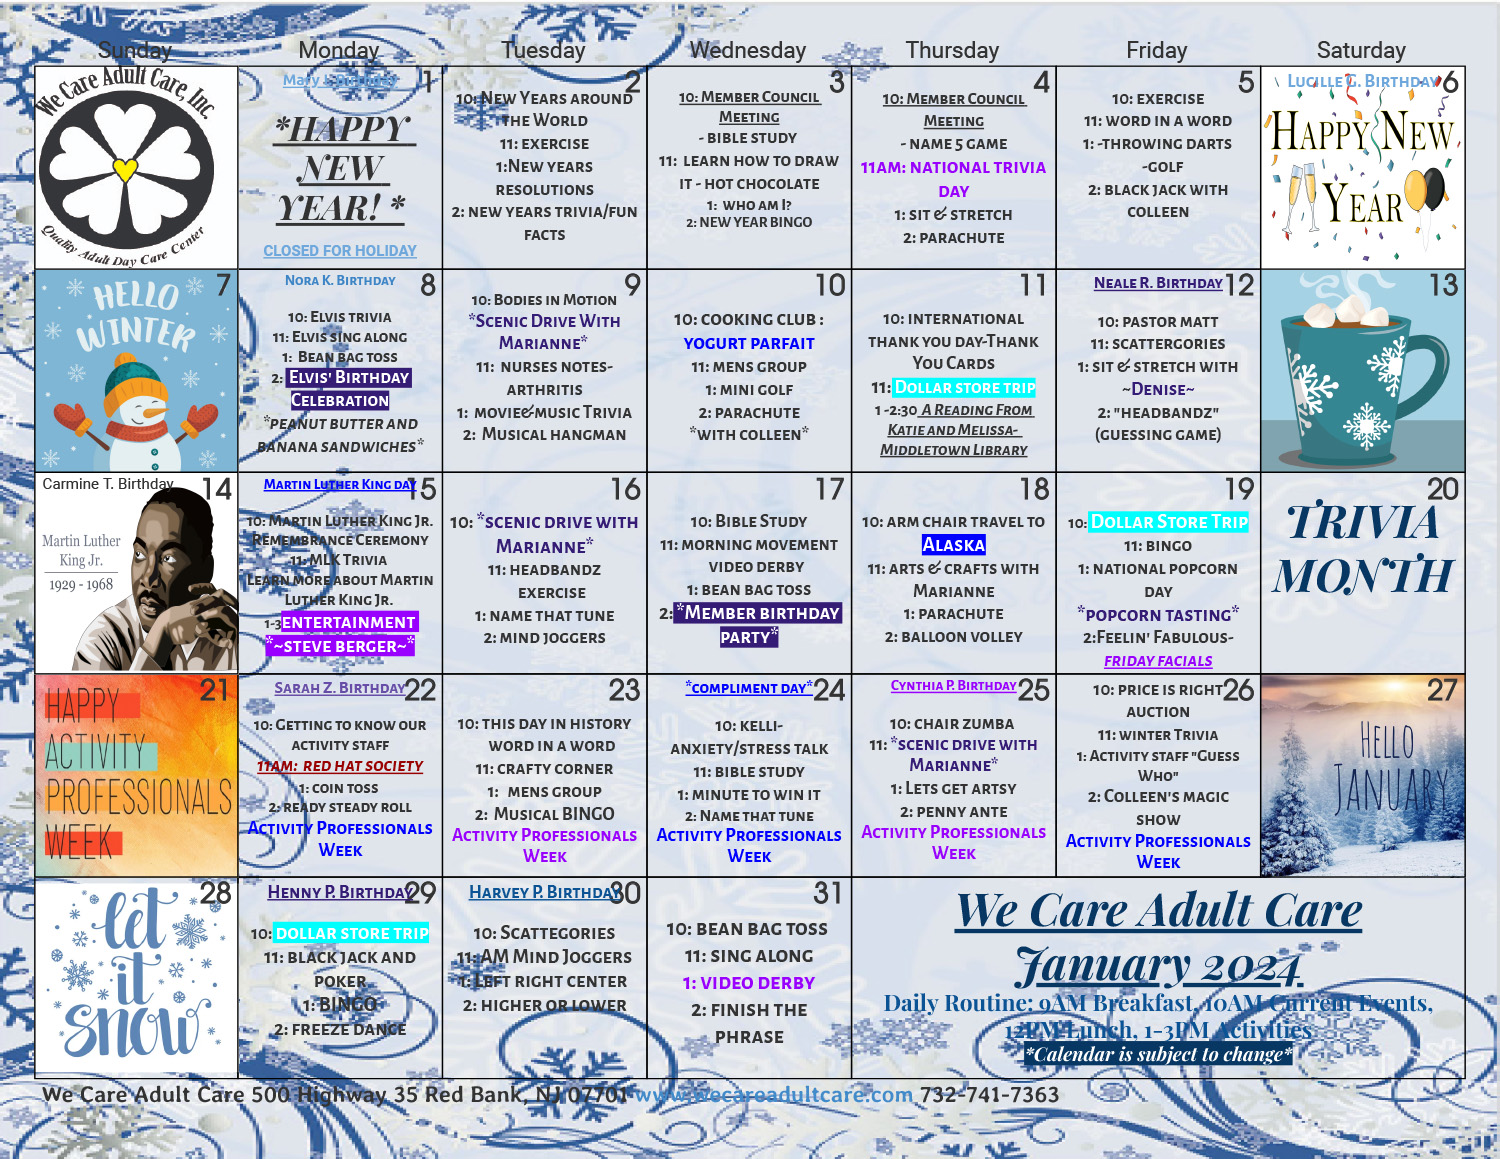 Calendar - We Care Adult Care, Inc.